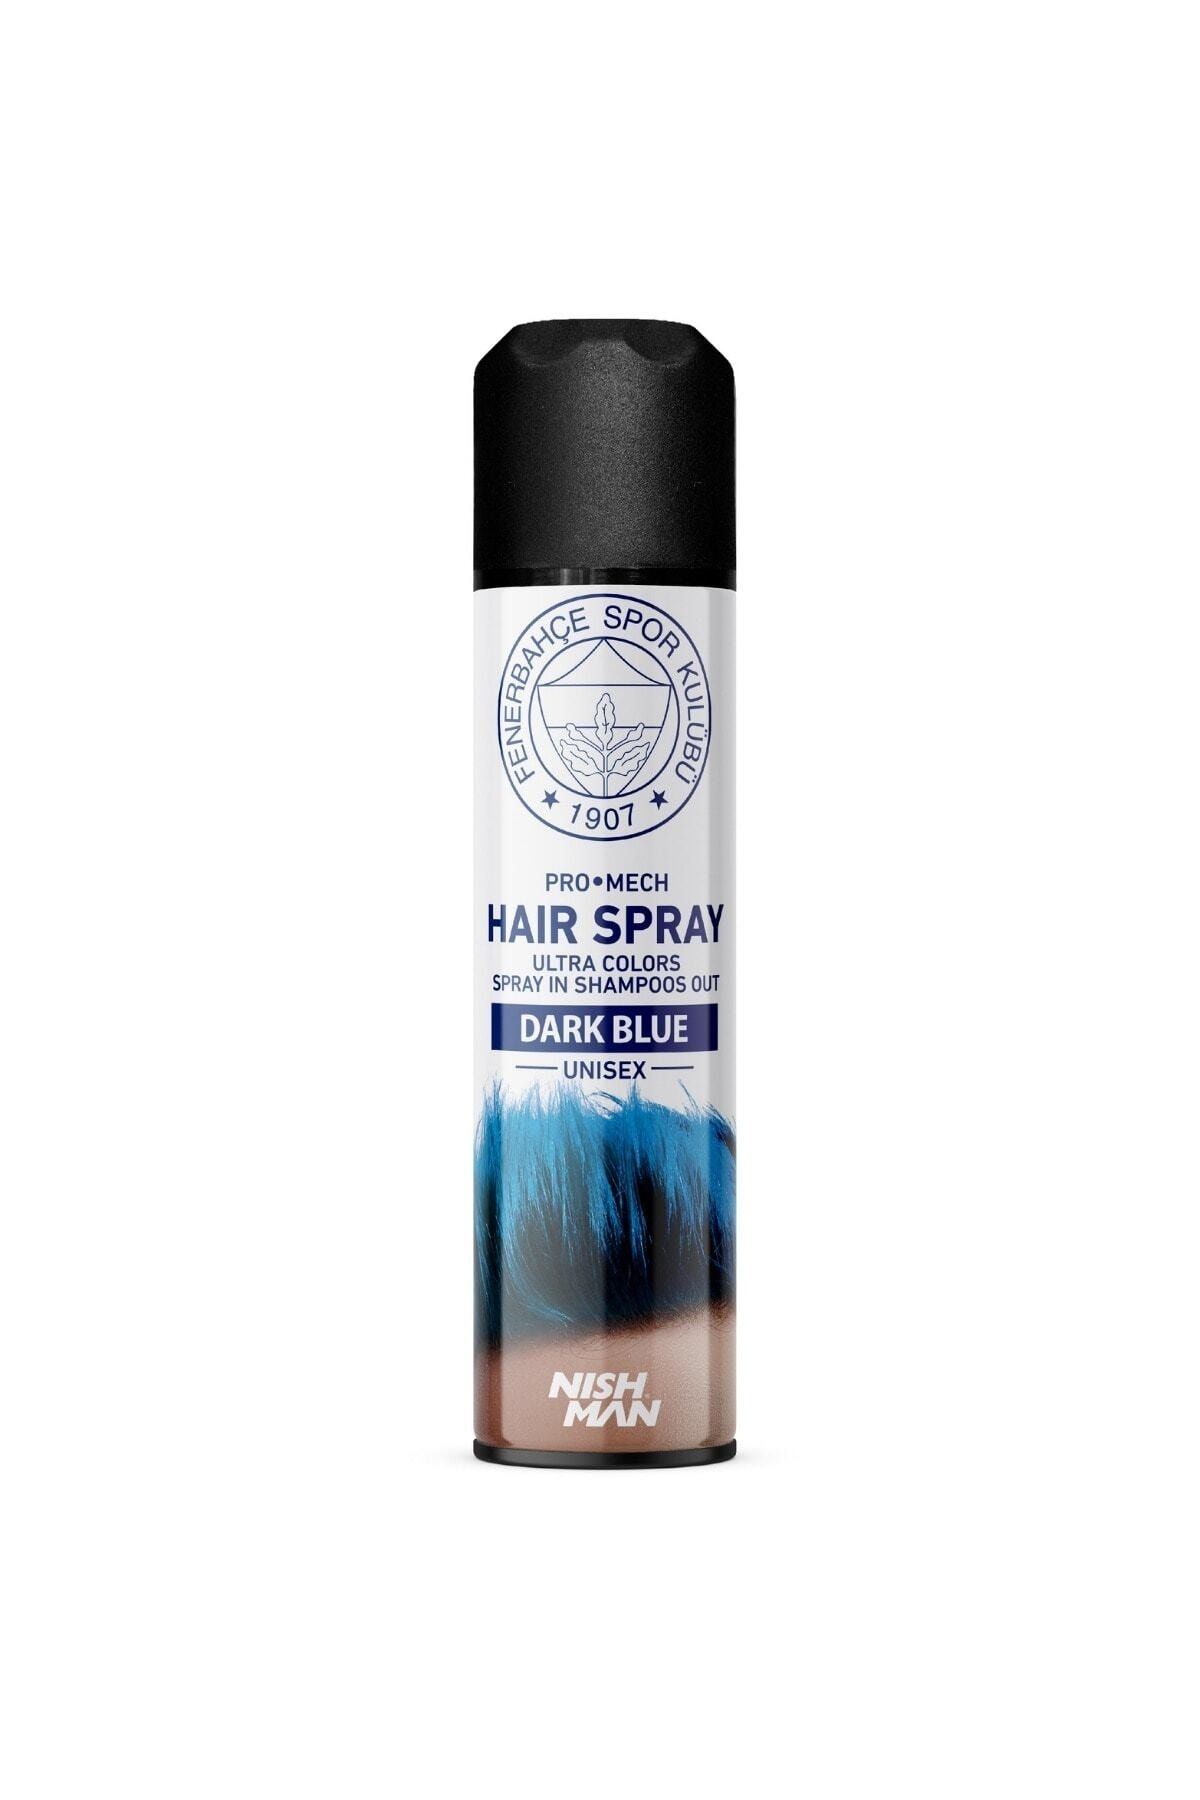 Fenerbahçe Renkli Saç Spreyi Lacivert ( Dark Blue Haır Spray ) 150 ml - Fenerbahçe Lisanslı Ürünüdür